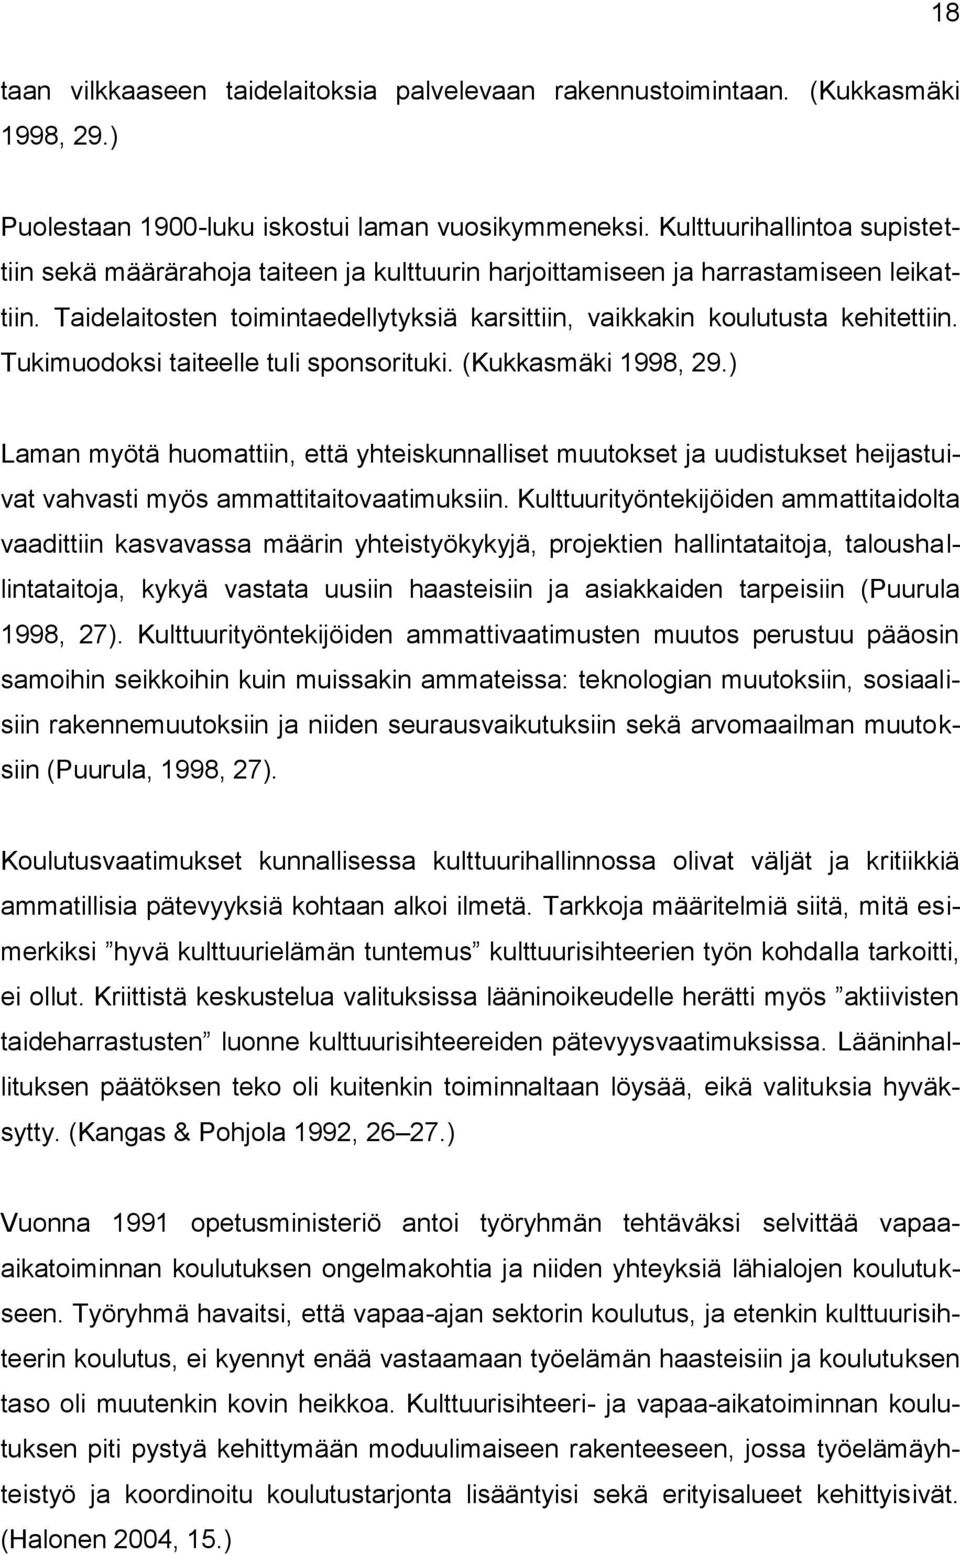 Tukimuodoksi taiteelle tuli sponsorituki. (Kukkasmäki 1998, 29.) Laman myötä huomattiin, että yhteiskunnalliset muutokset ja uudistukset heijastuivat vahvasti myös ammattitaitovaatimuksiin.